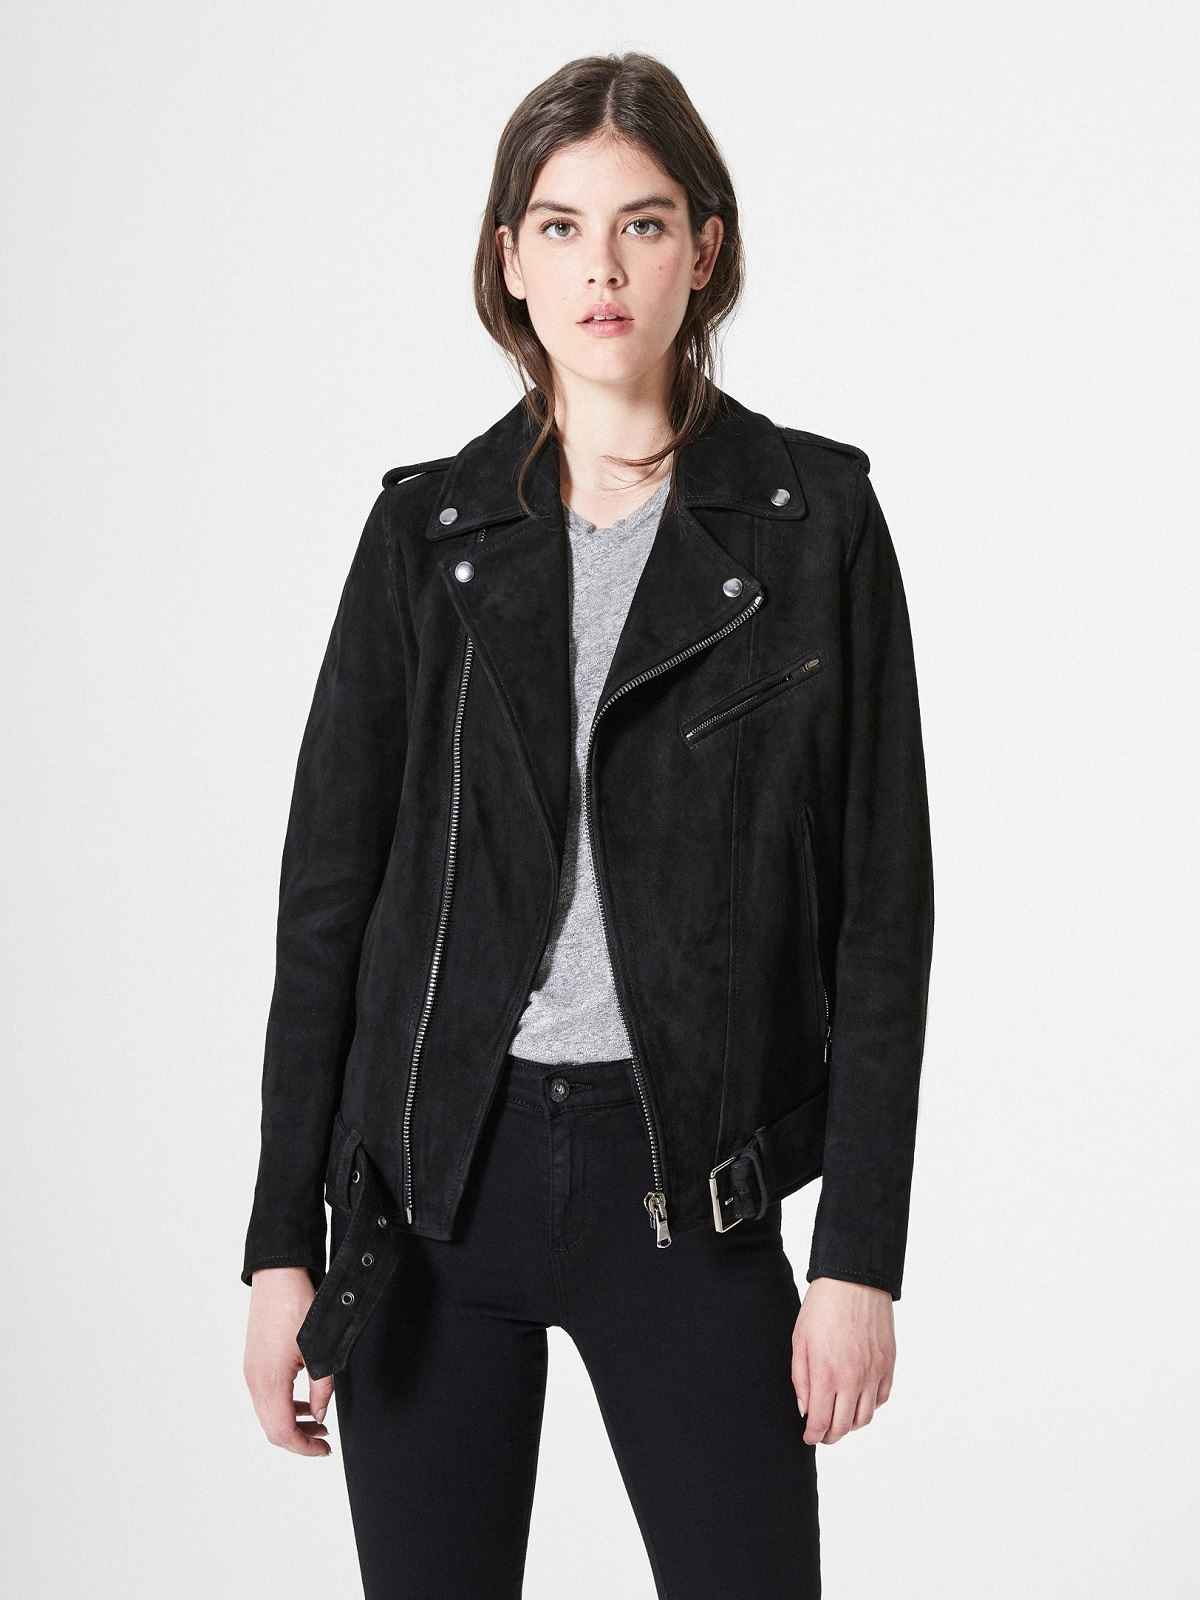 Black Suede Leather Jacket For Women - LJ.com